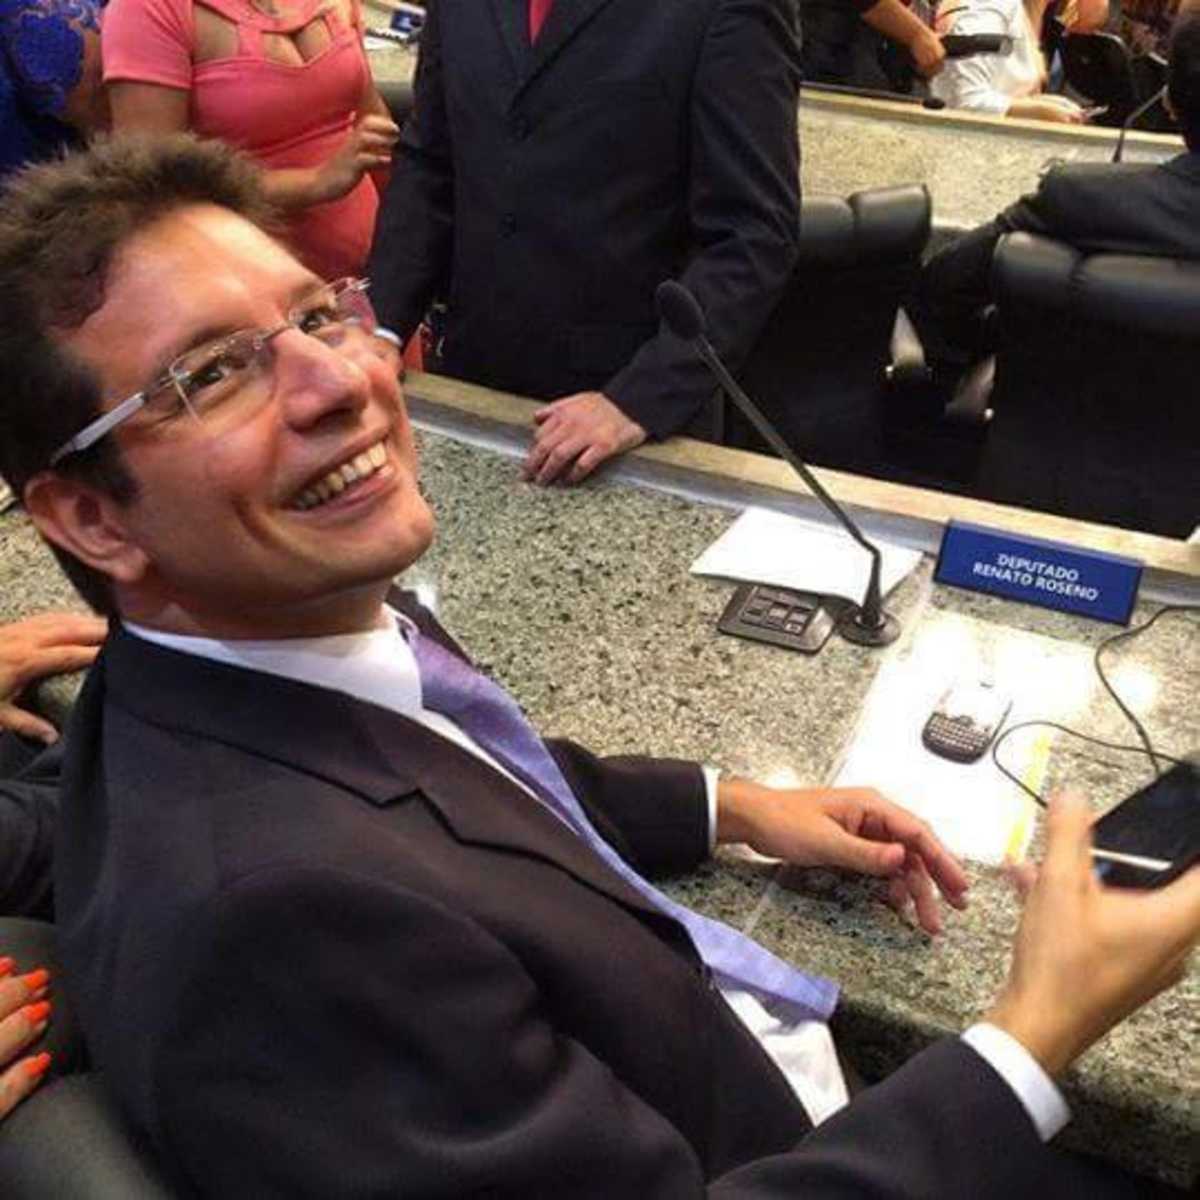 Renato Roseno sentado em plenário. Placa com nome mostra que ele é deputado estadual